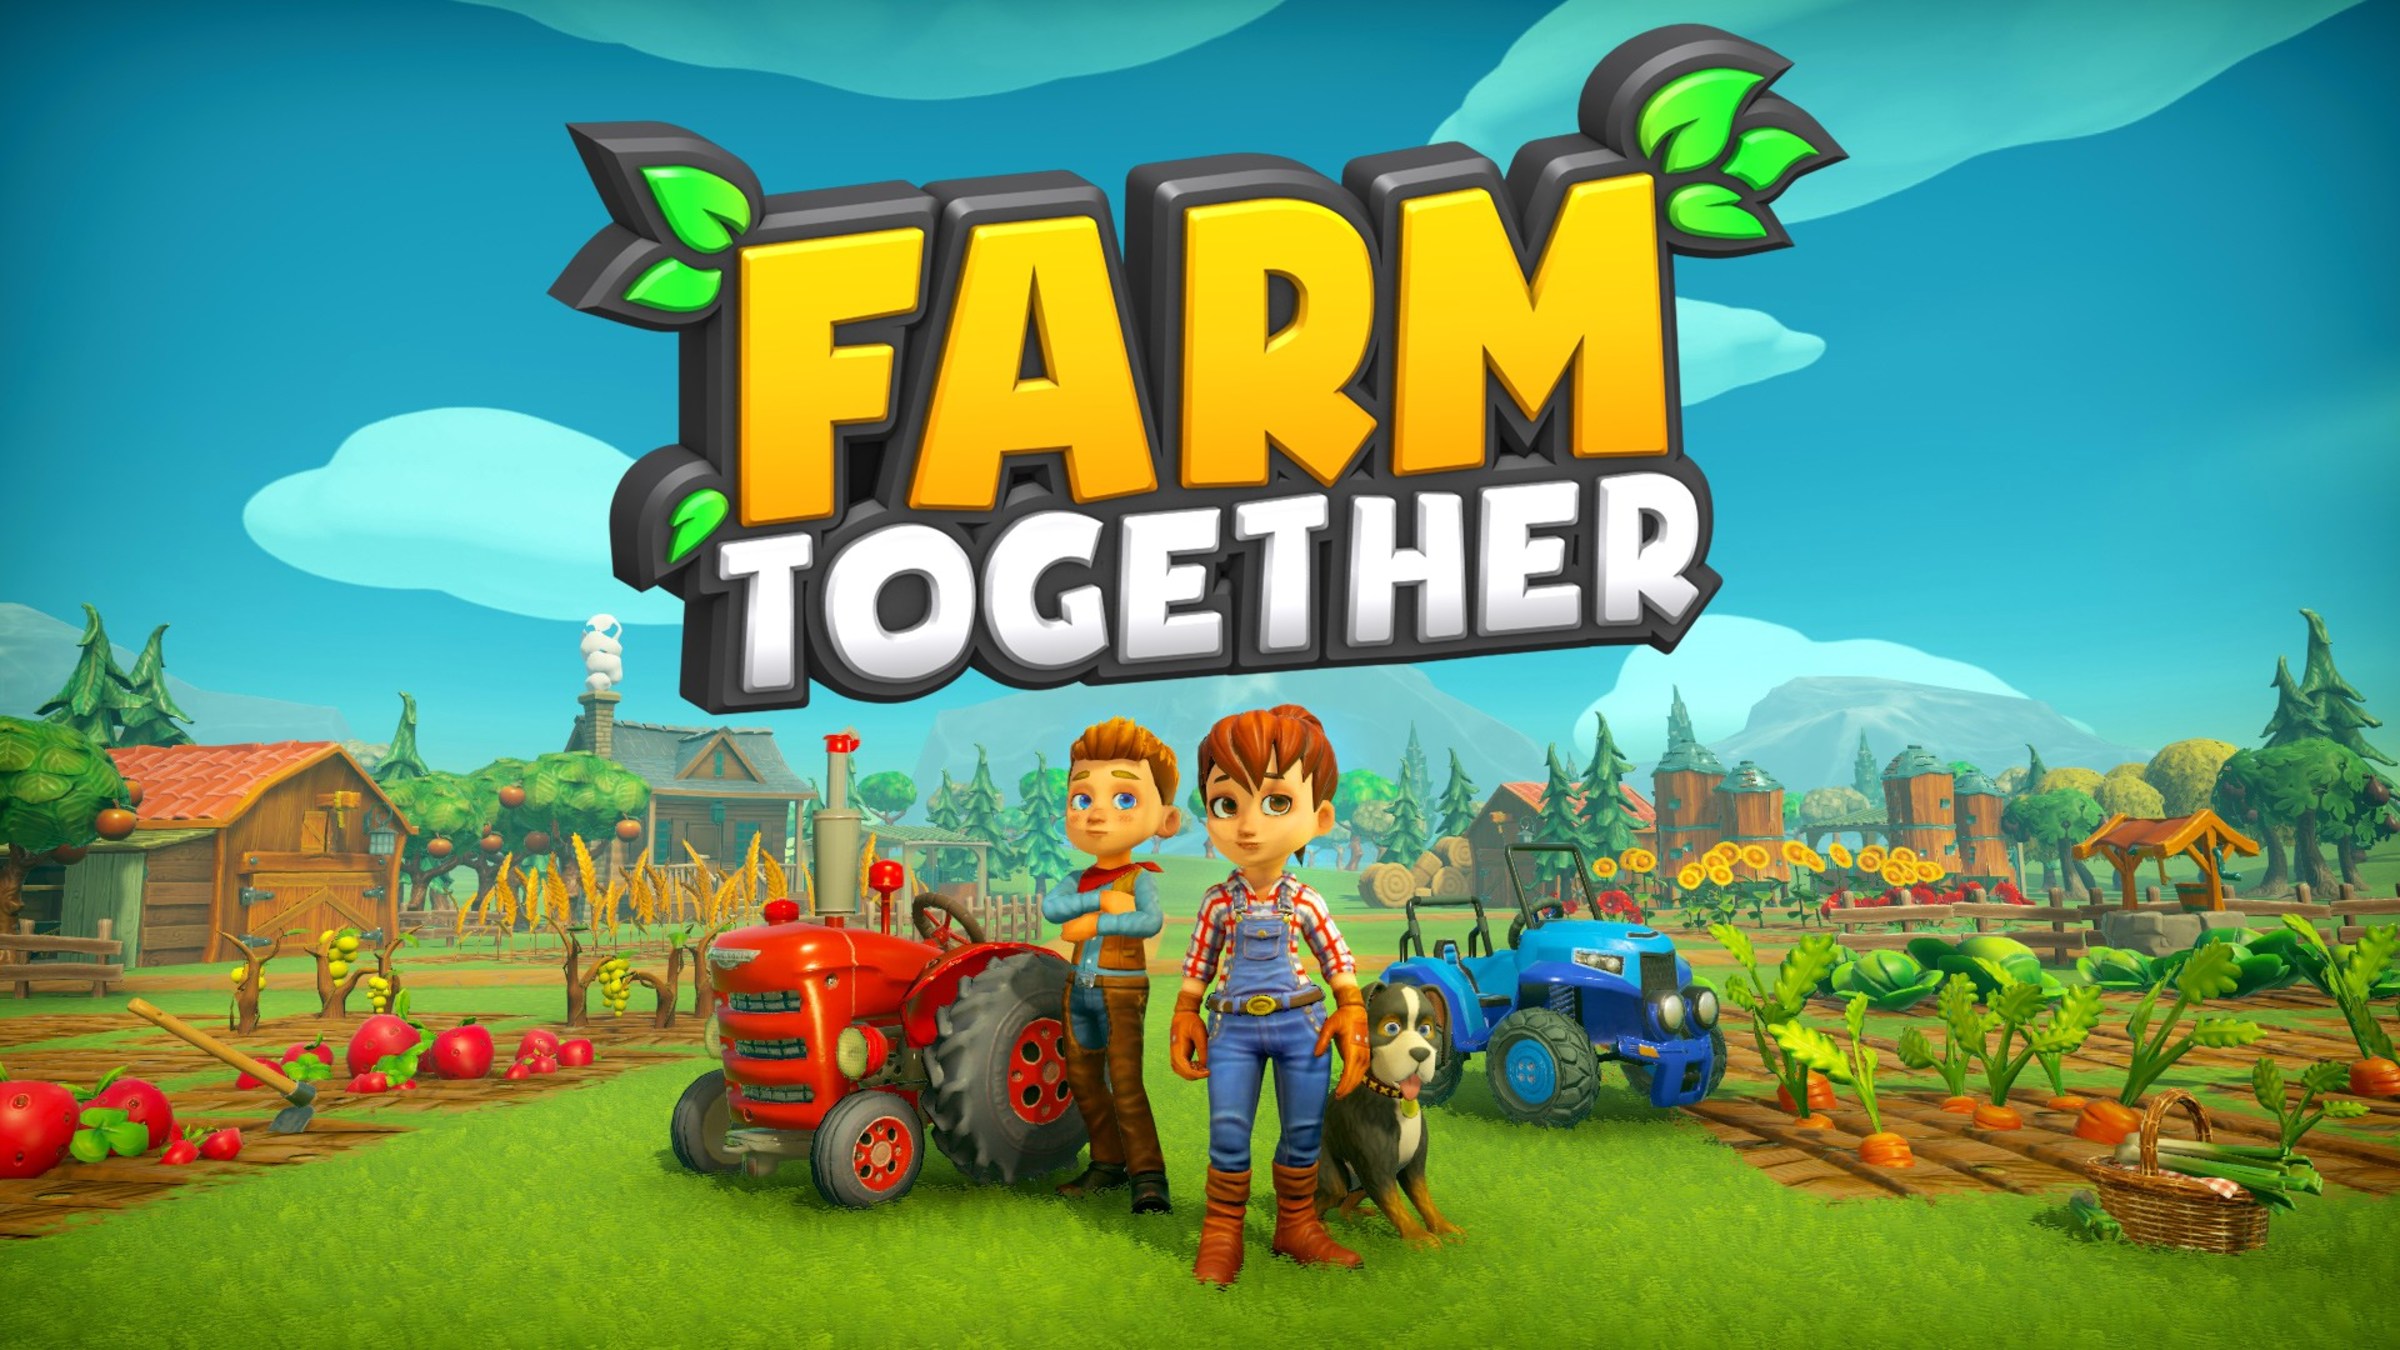 Novo Jogo de Fazenda com Multiplayer - Ranch Simulator (GAMEPLAY/PORTUGUÊS/ PC) 